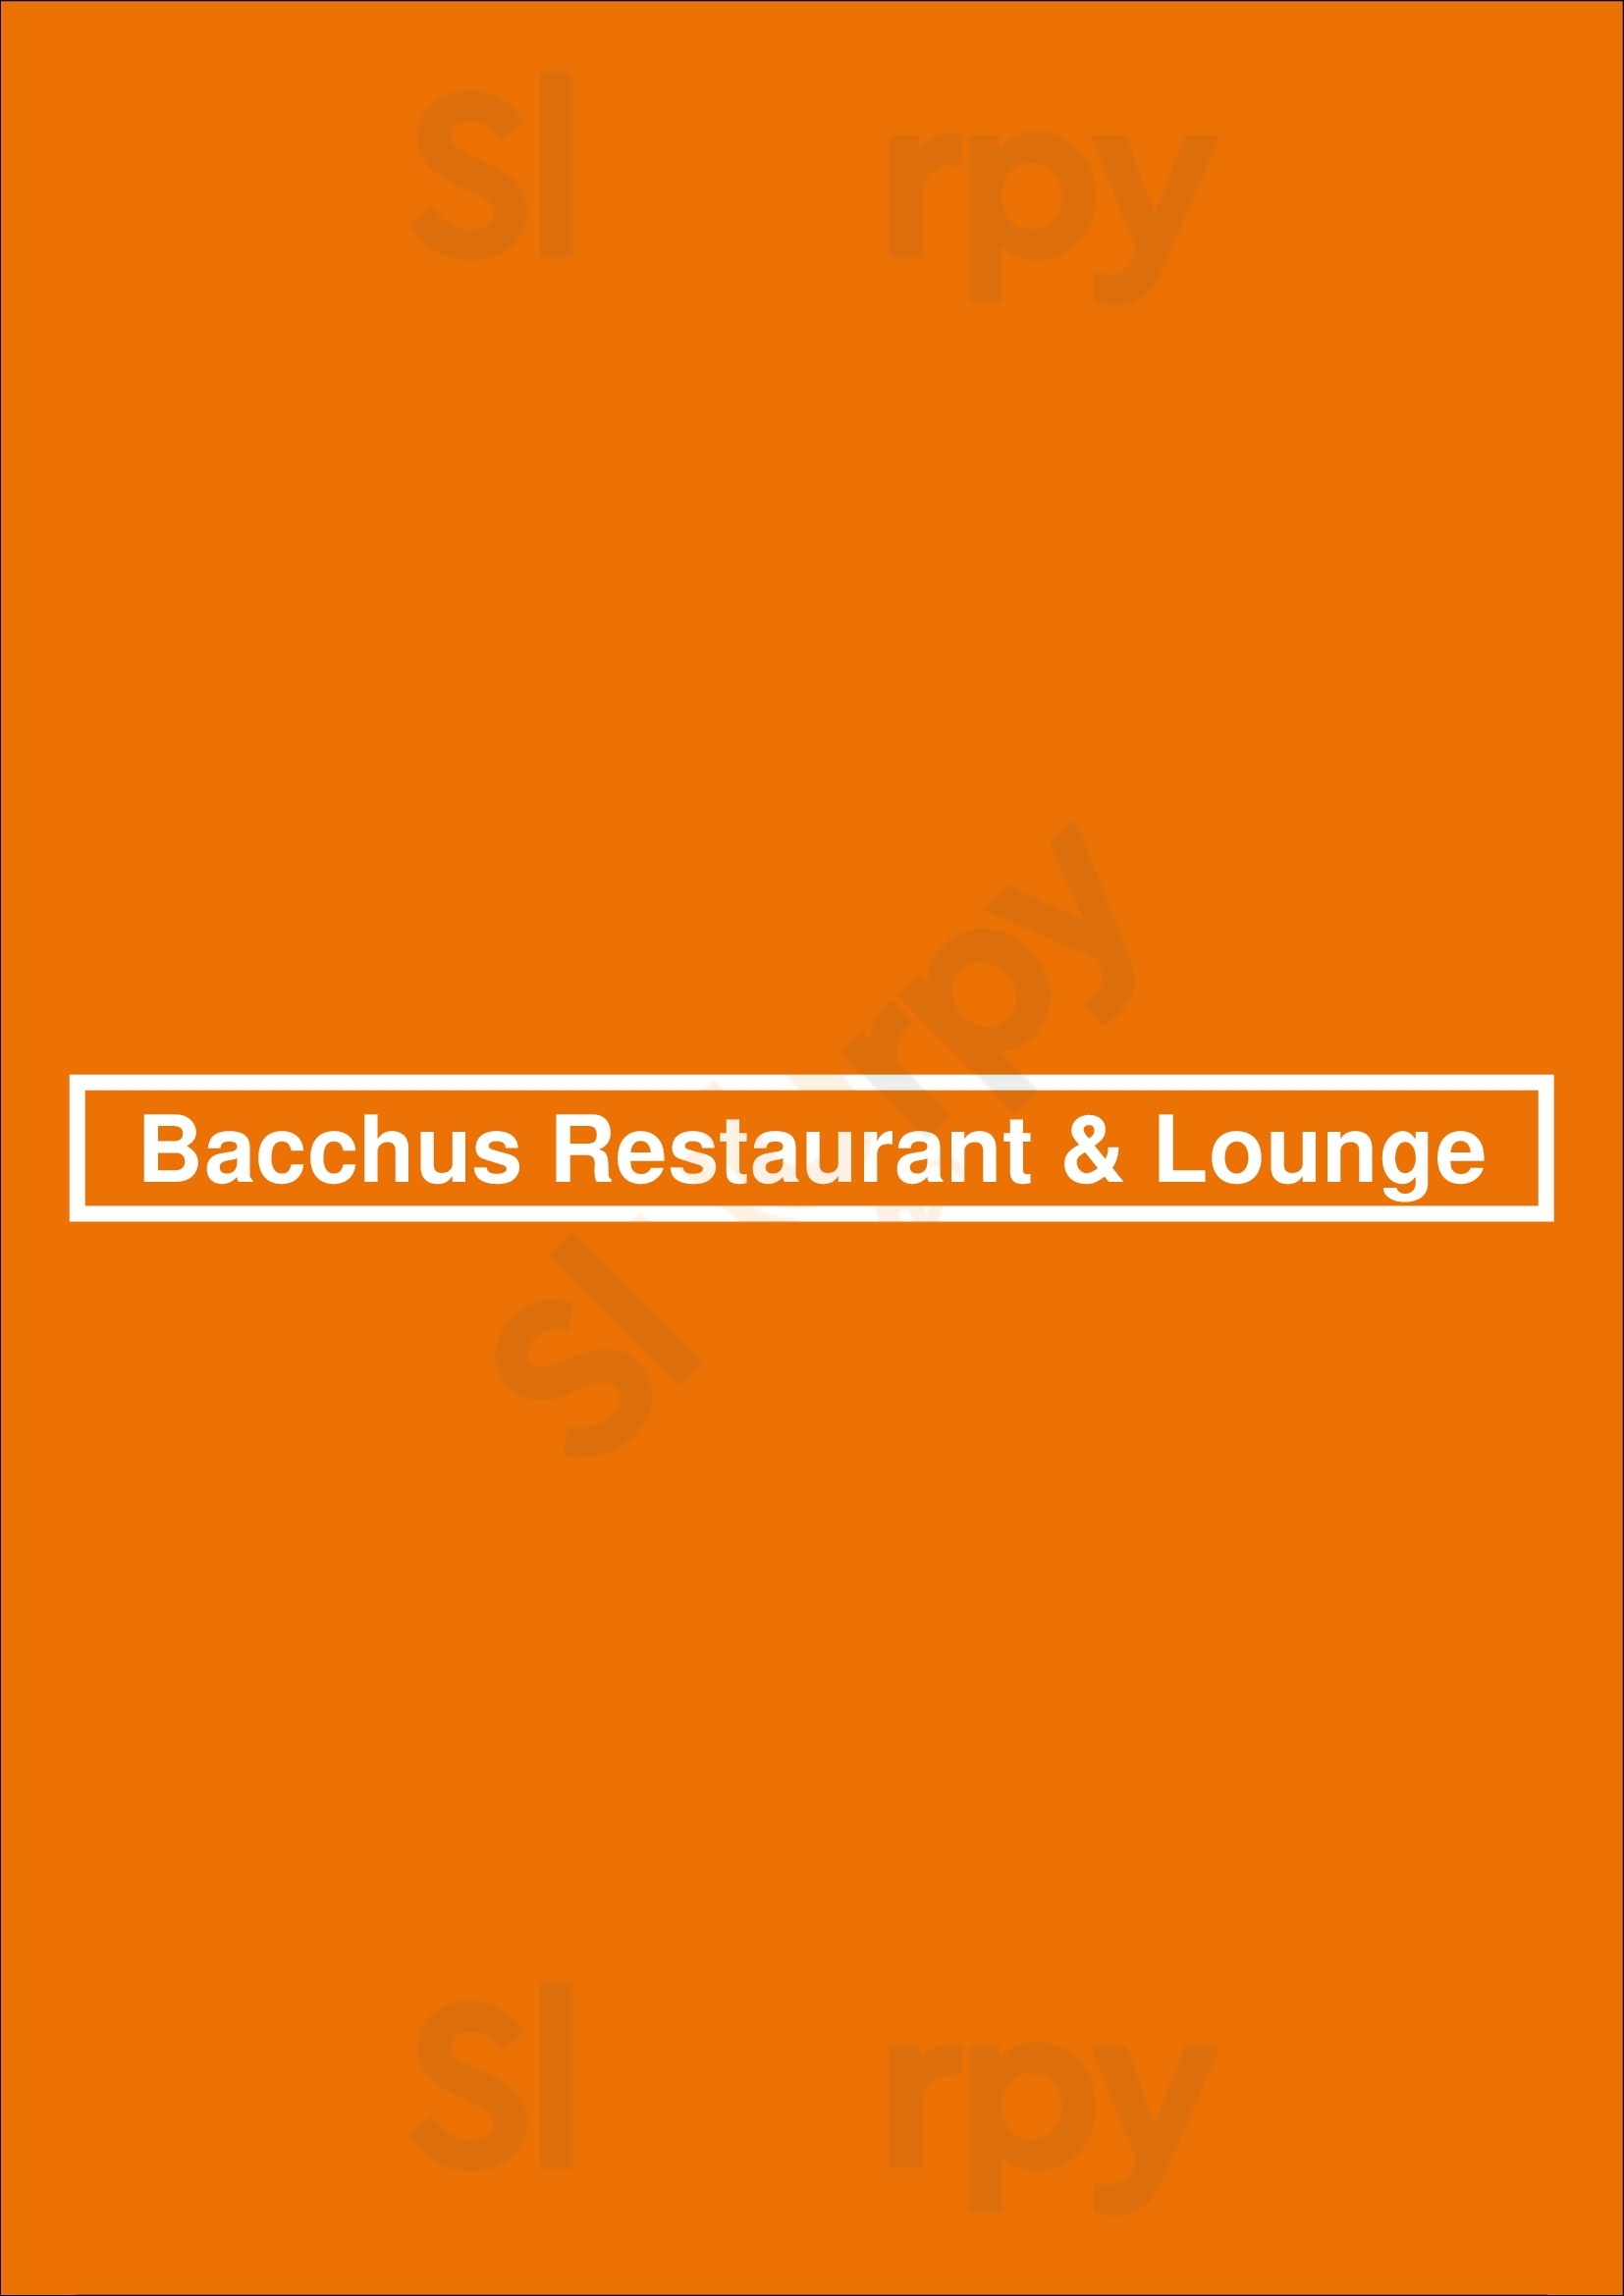 Bacchus Restaurant & Lounge Vancouver Menu - 1